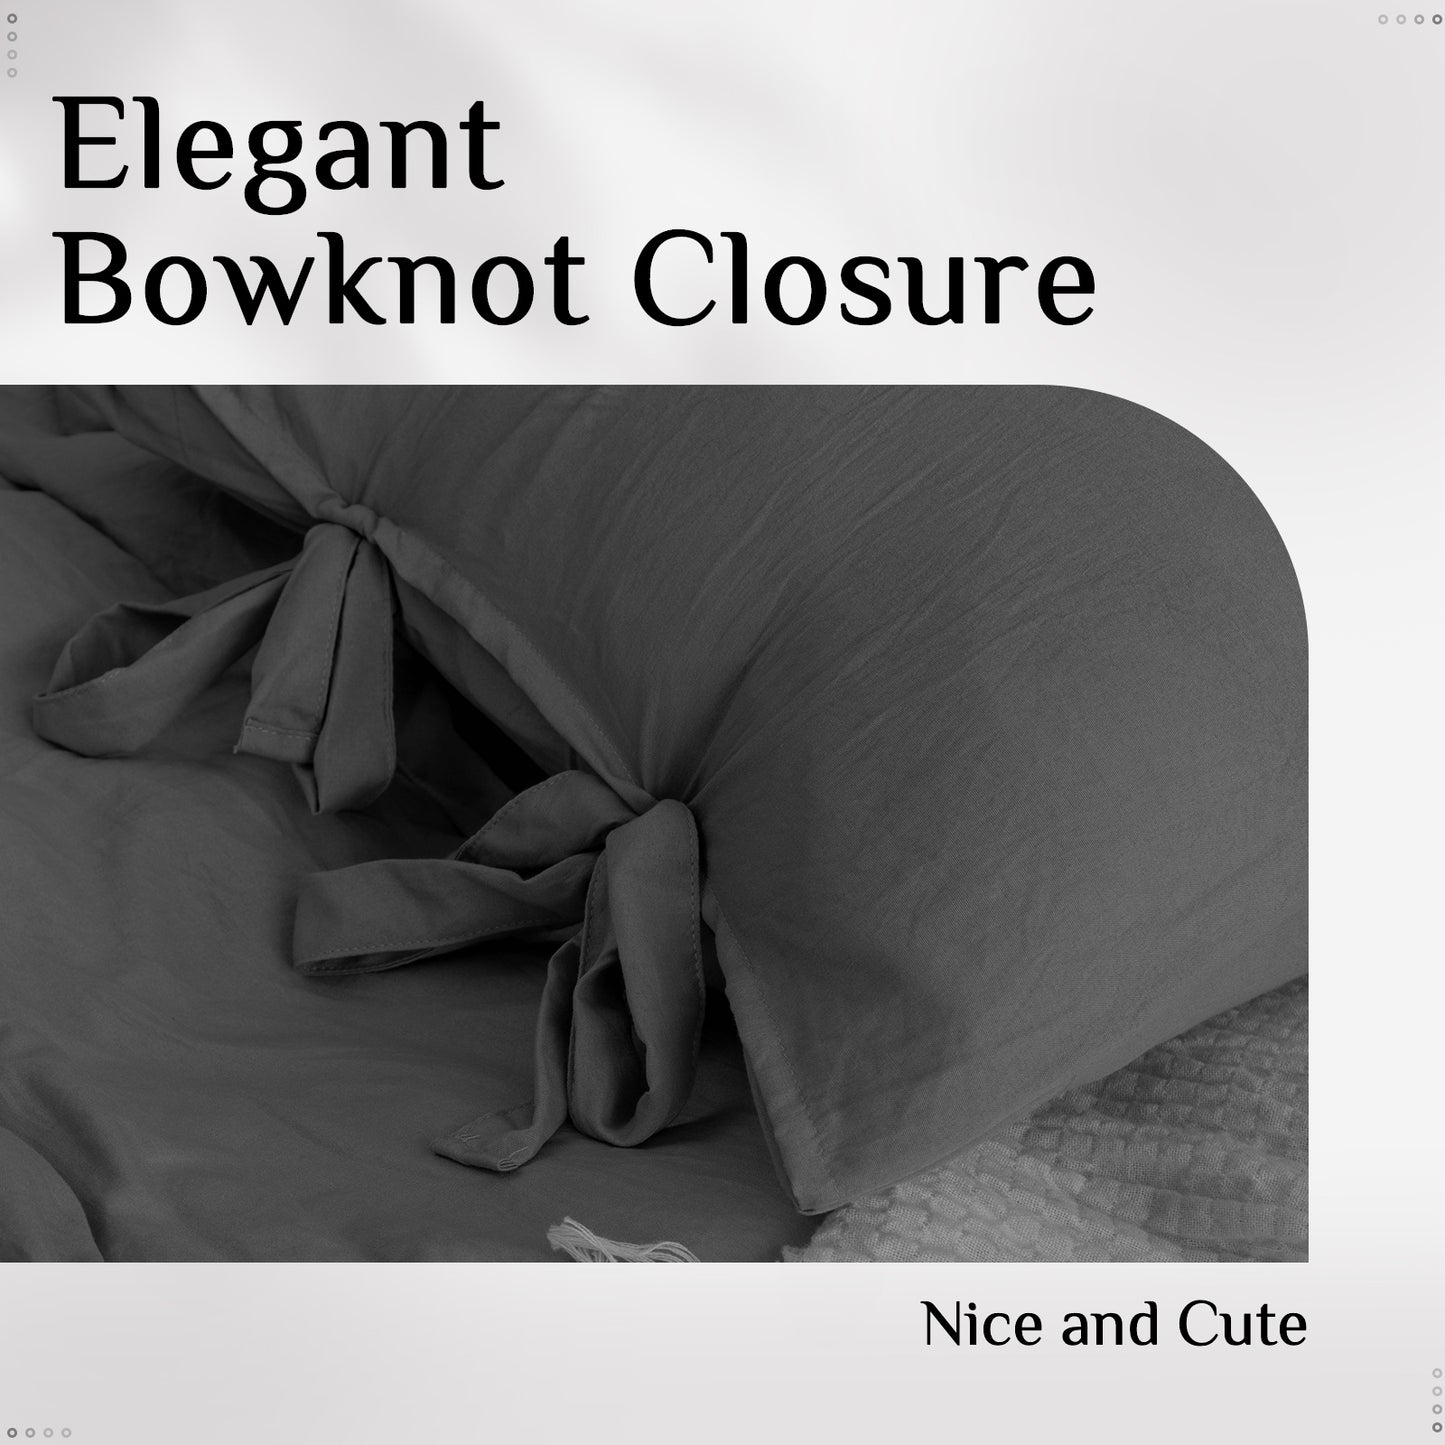 Argstar Bowknot Closure Duvet Cover Set Dark Grey Color